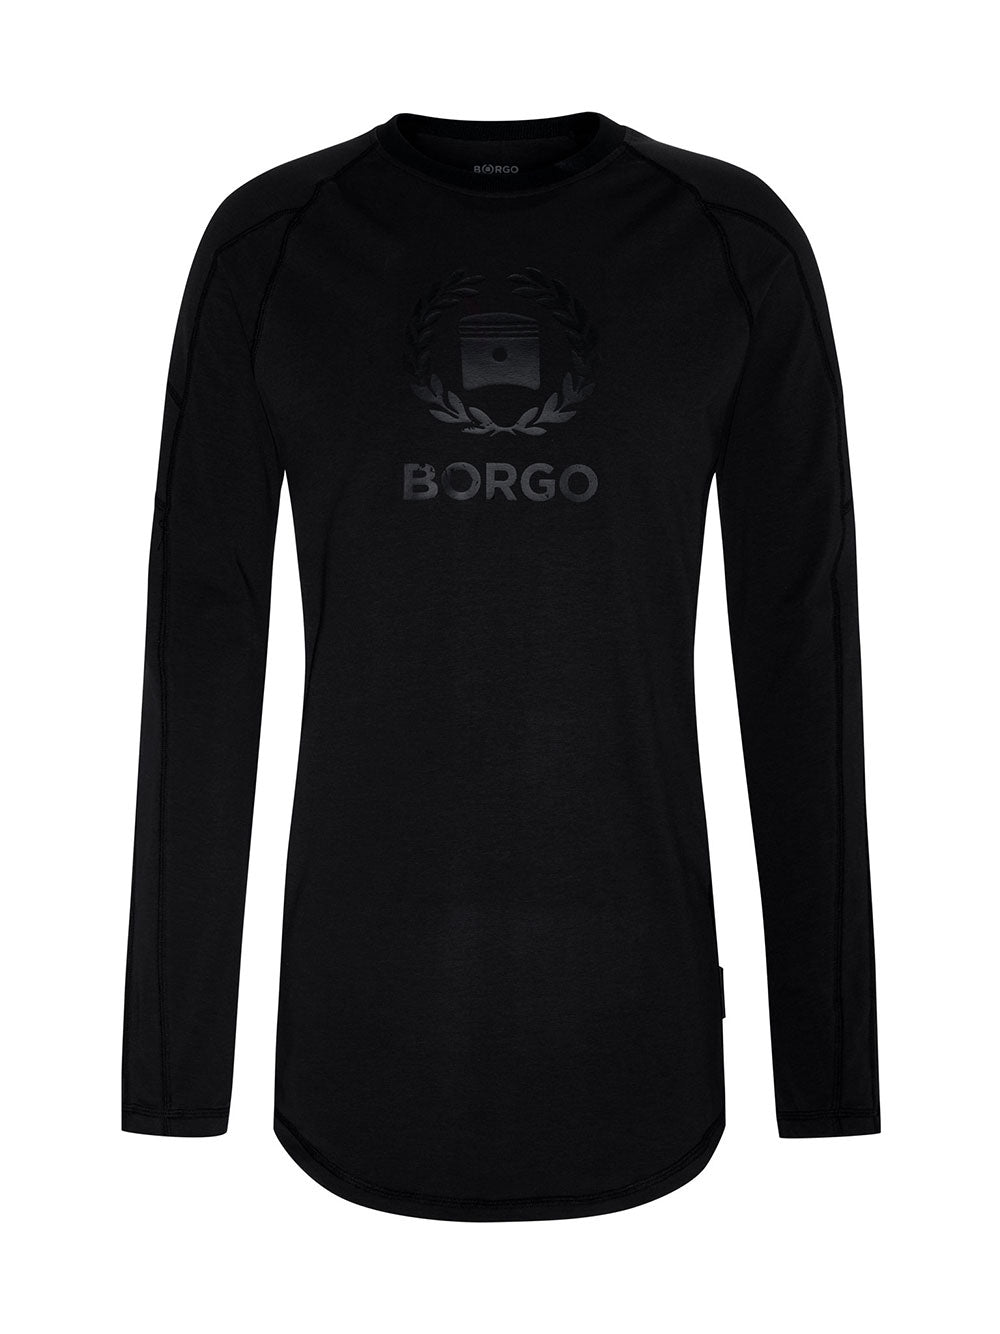 BORGO Siracusa Longlap Nero Nero T-Shirt